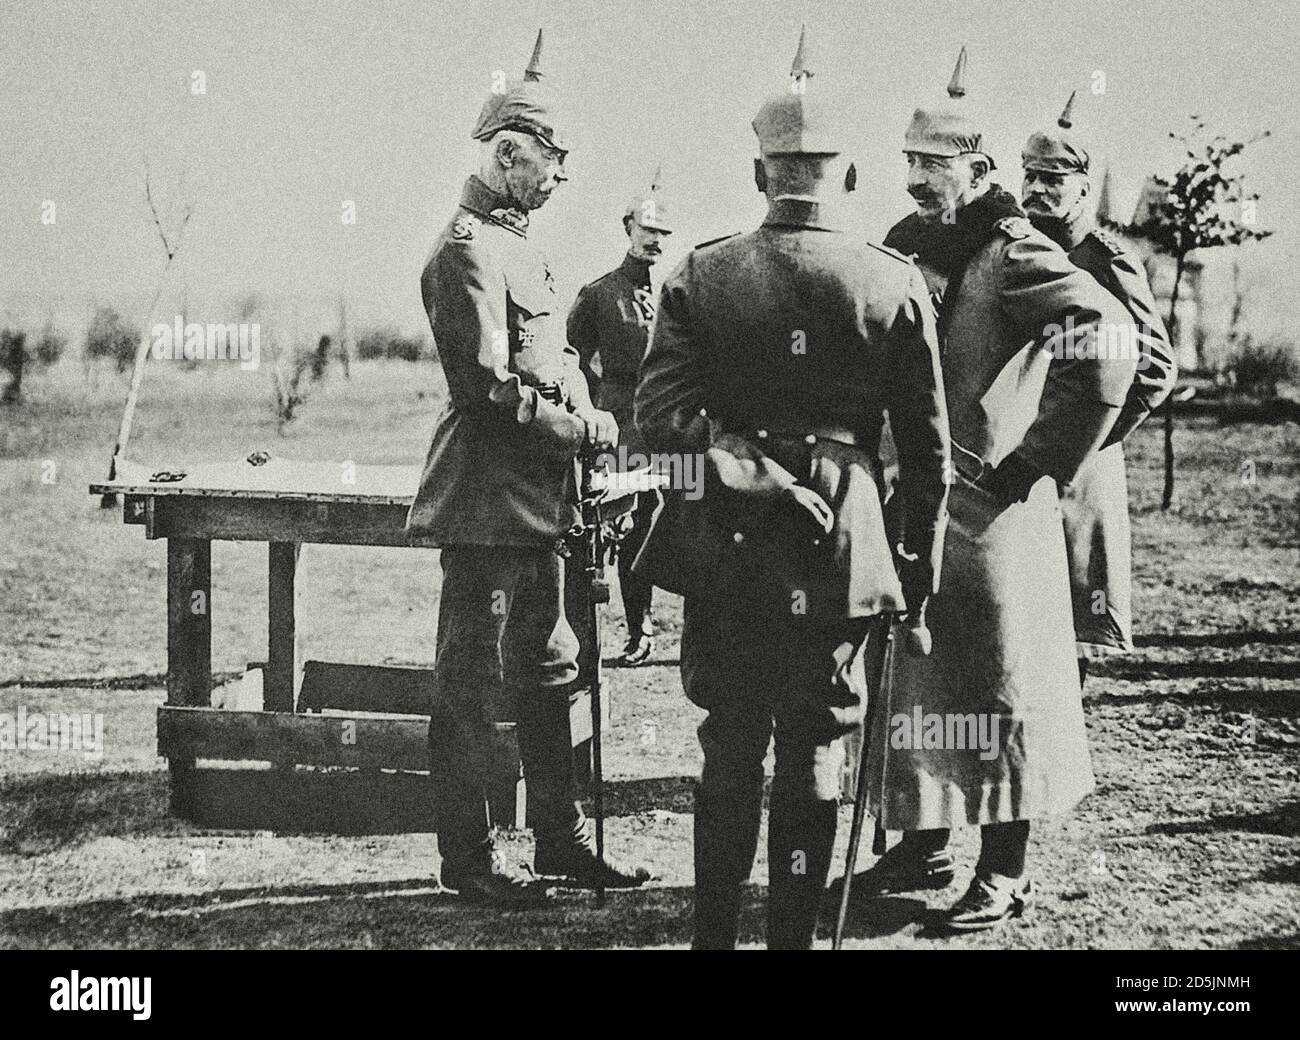 Kaiser Willhelm II avec des officiers allemands dans une discussion sur le front occidental. La période de la première Guerre mondiale Banque D'Images